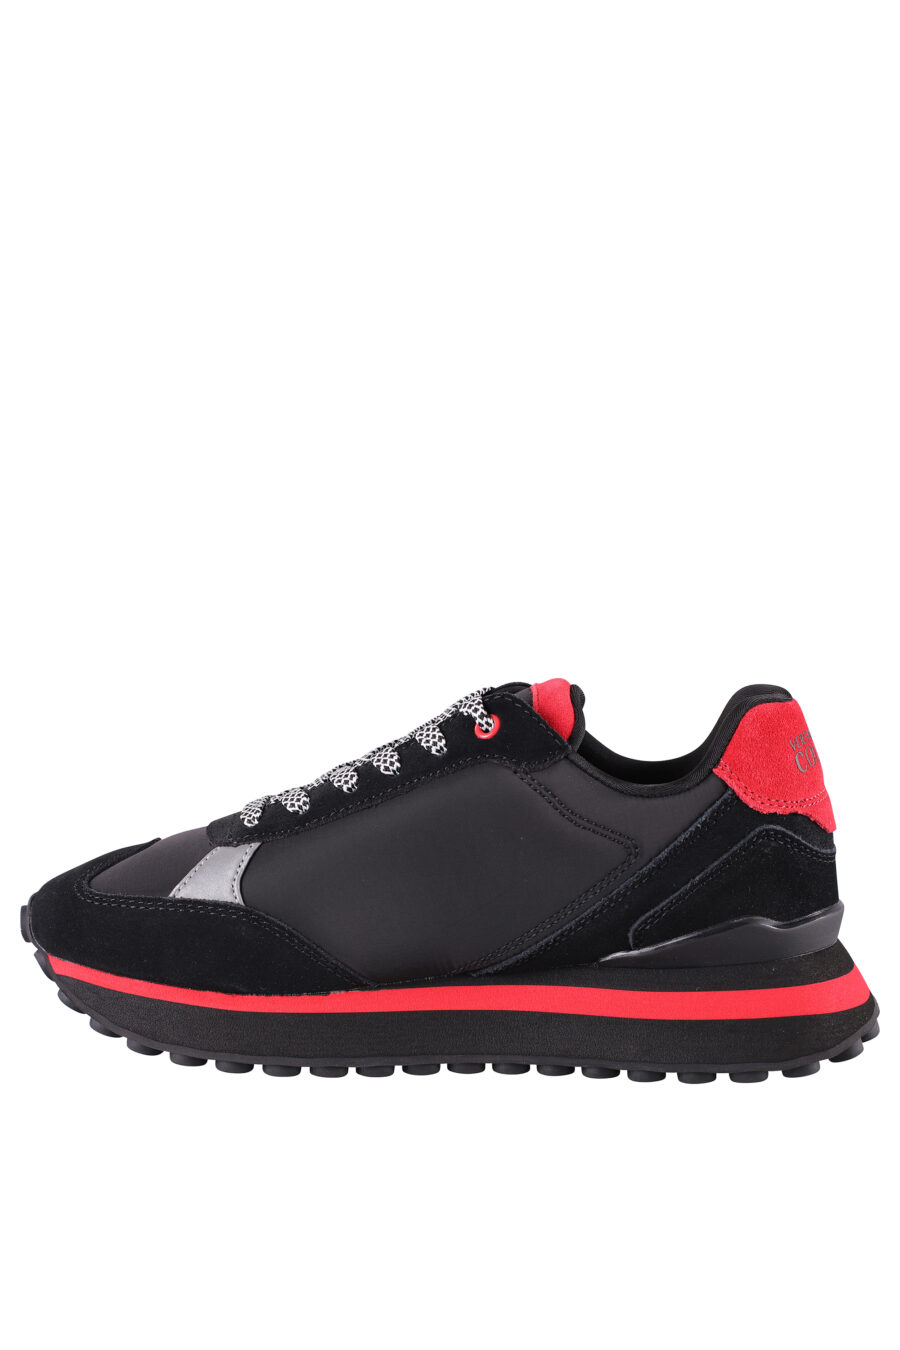 Zapatillas negras y rojas con plataforma y logo plateado - IMG 8496